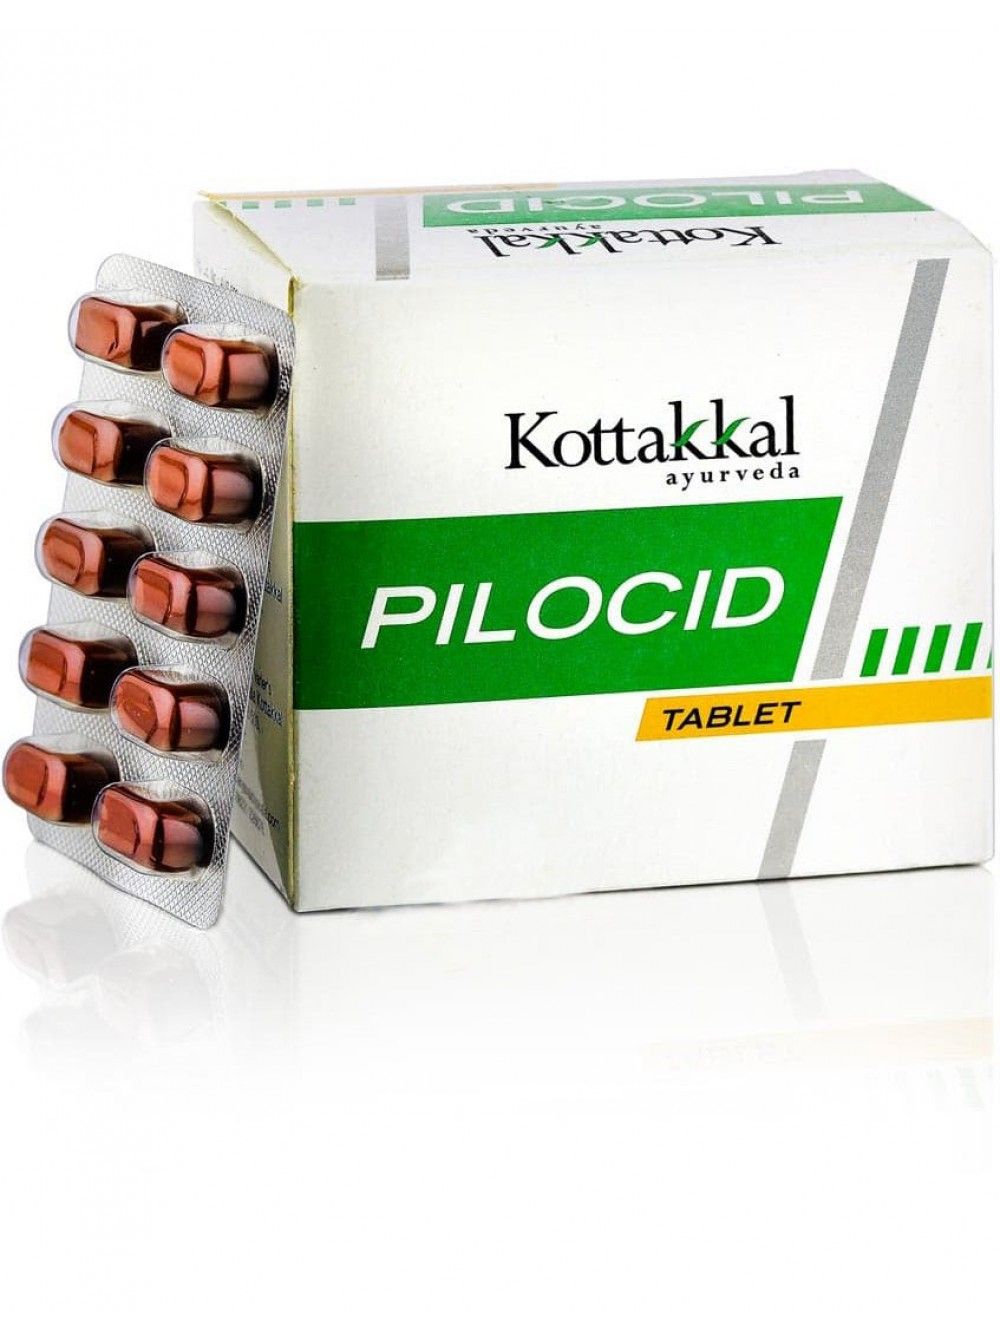 Пилоцид, 100 таб, производитель Коттаккал Аюрведа; Pilocid, 100 tabs, Kottakkal Ayurveda